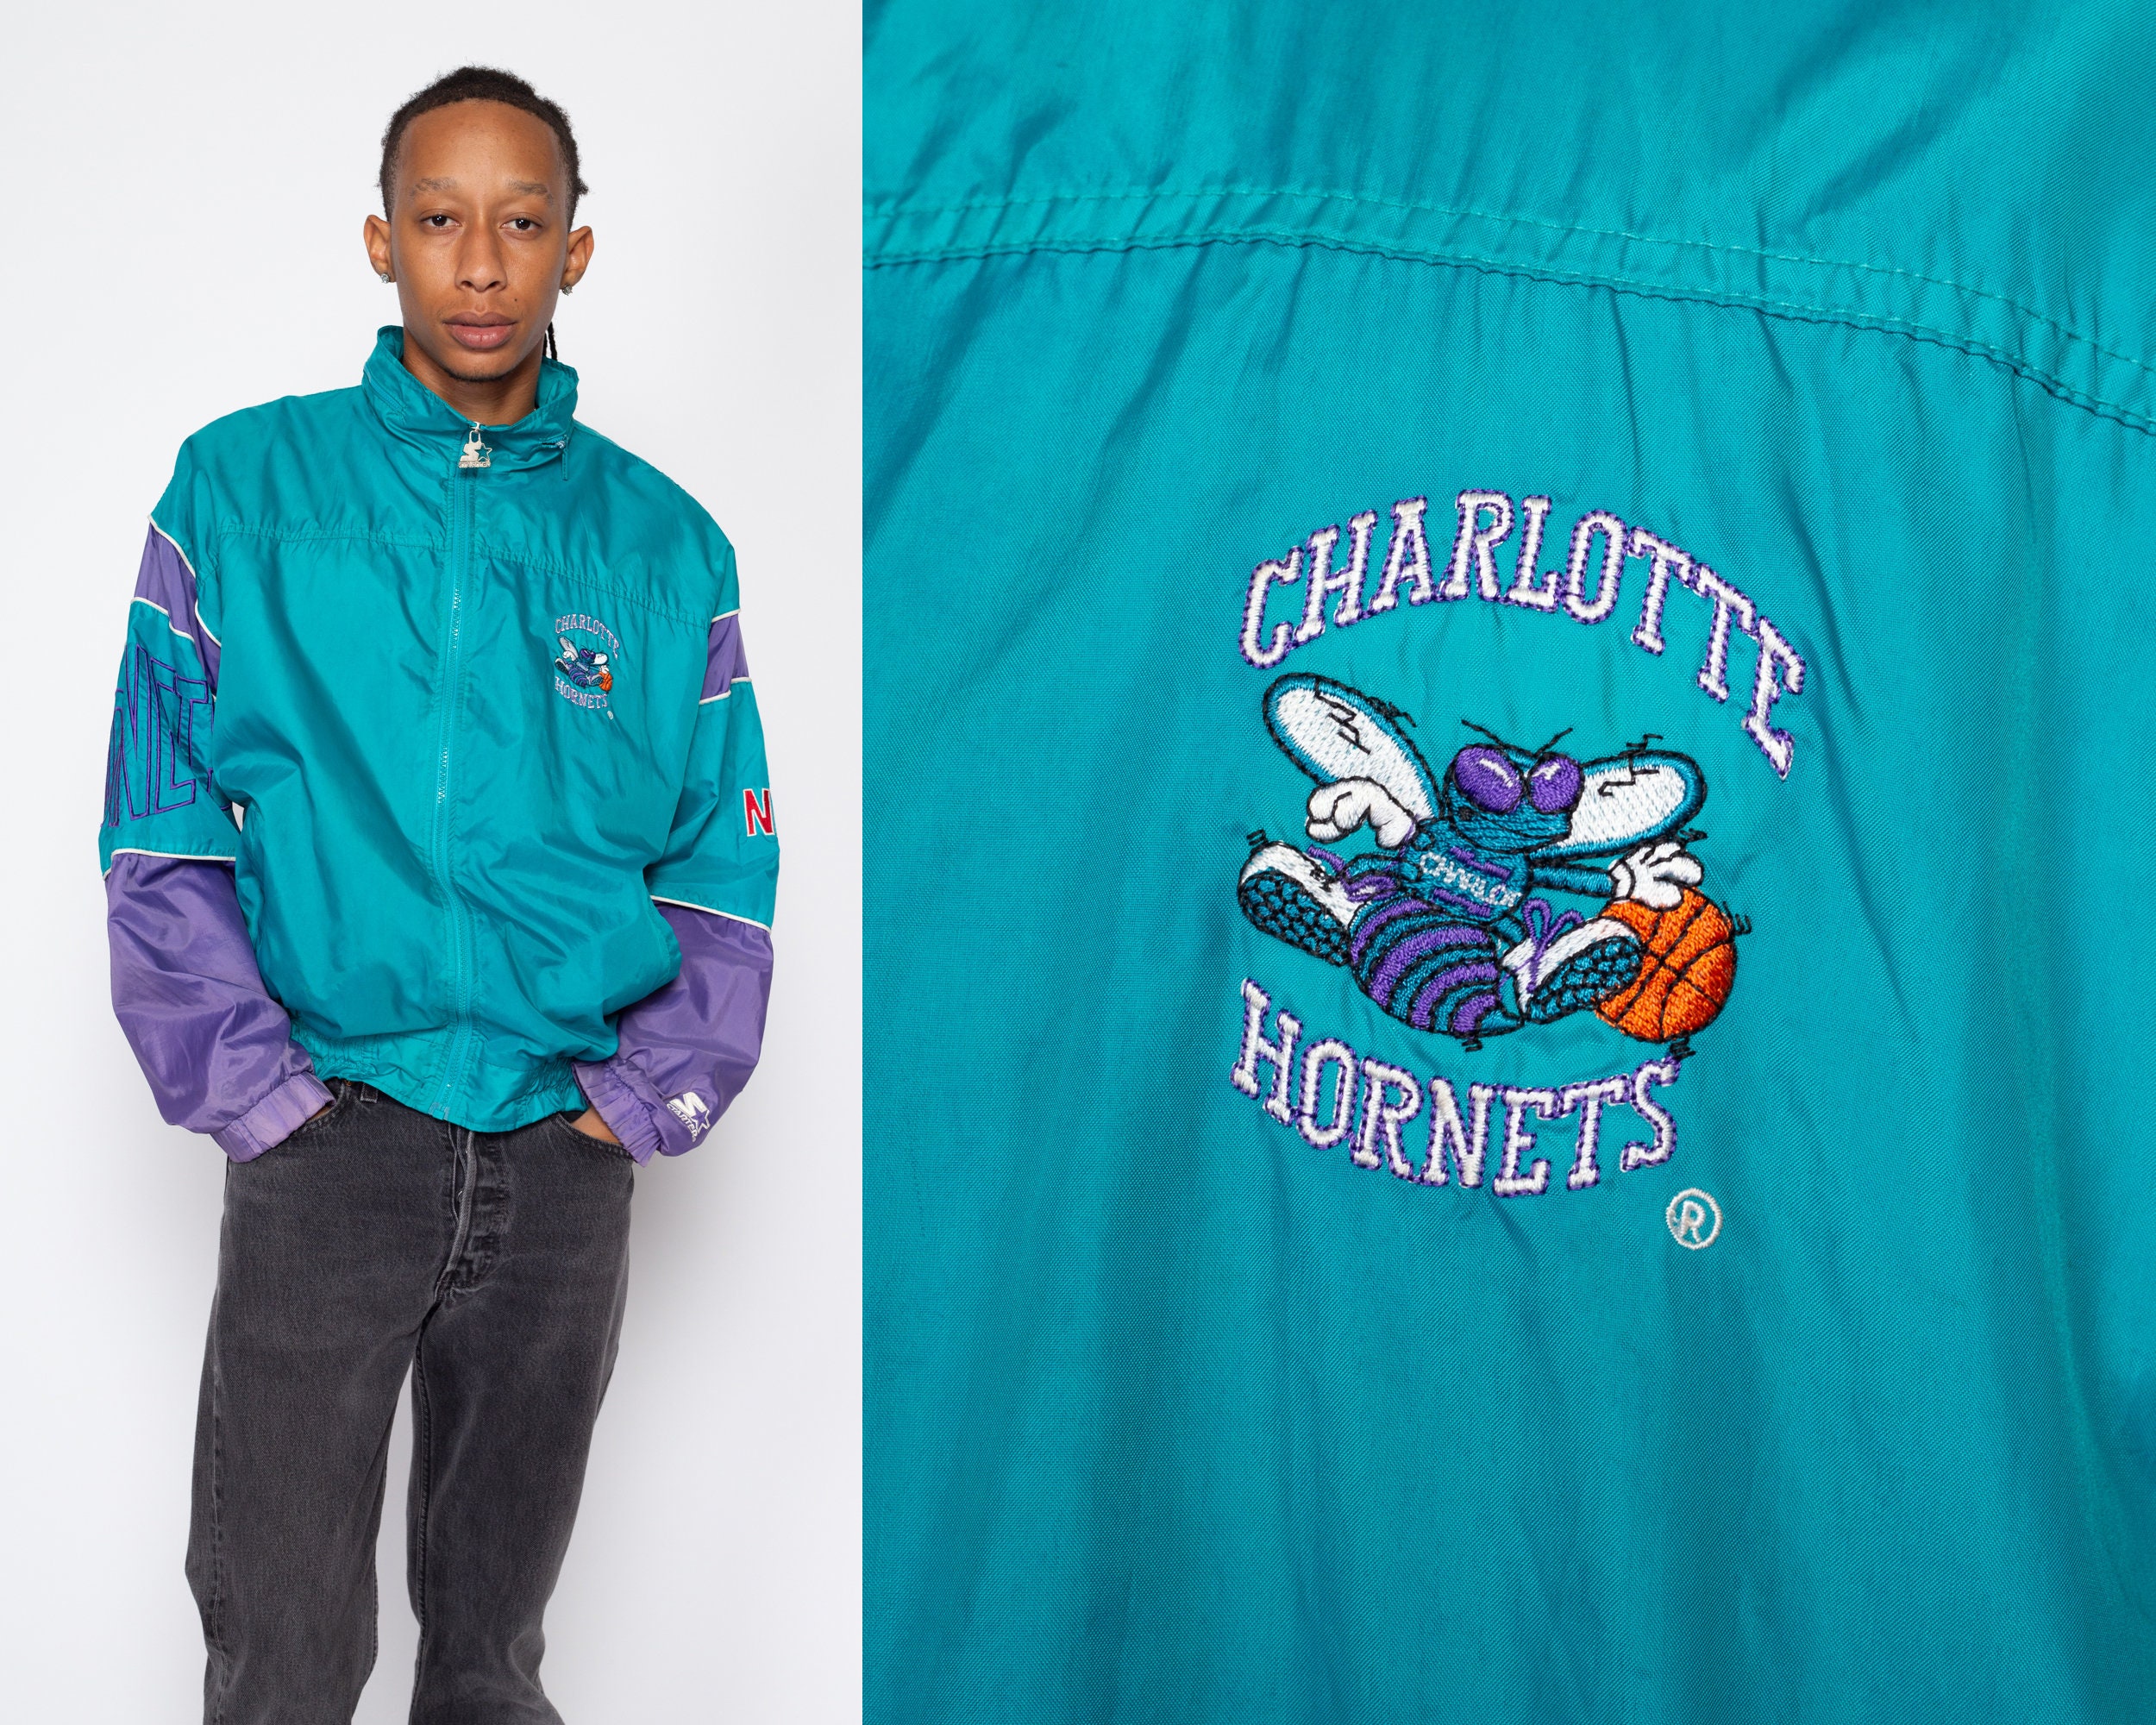 Vintage Starter Full Zip Jacket Big Logo Charlotte Hornets New J Cole 90s